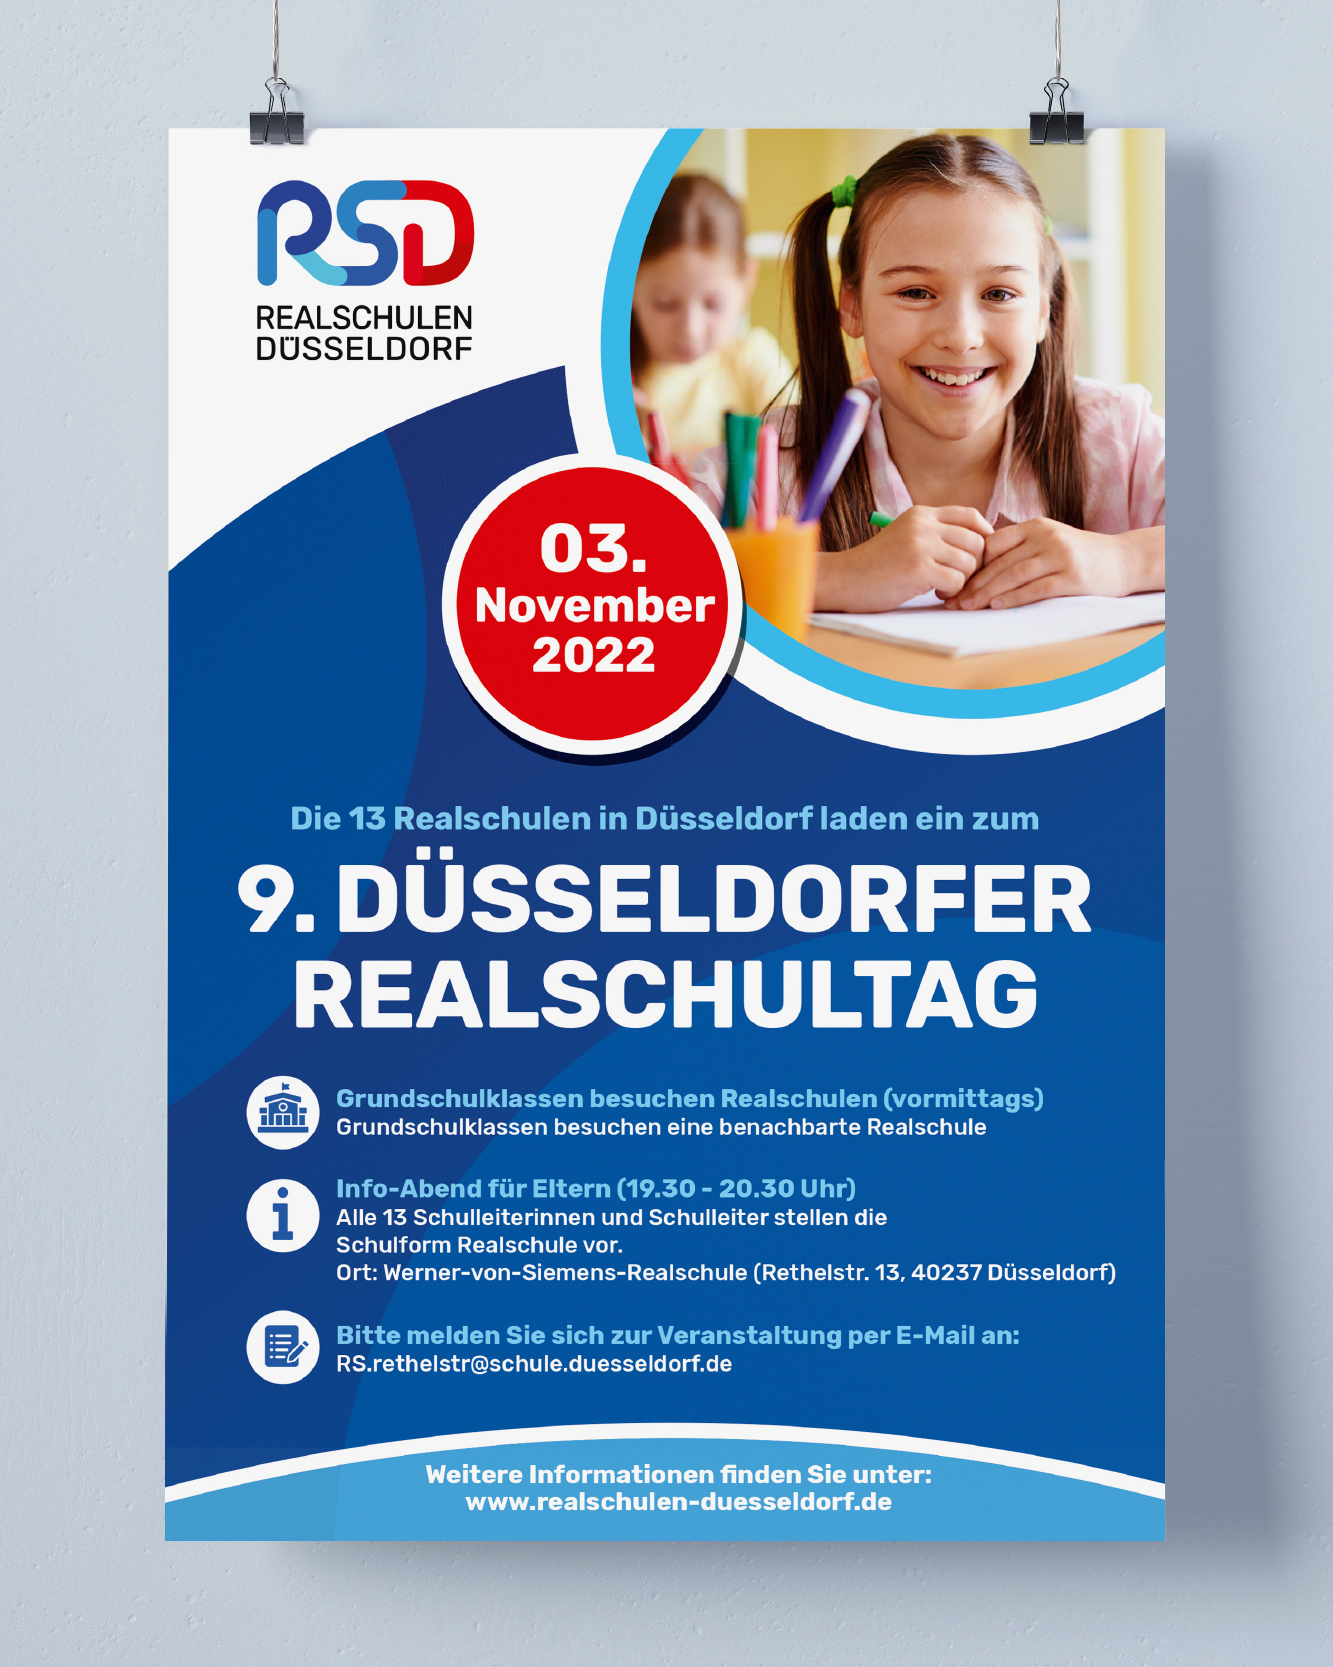 361° Kommunikation - Realschulen Düsseldorf | Corporate Design | Poster | Wir unterrichten Zukunft mit Tradition